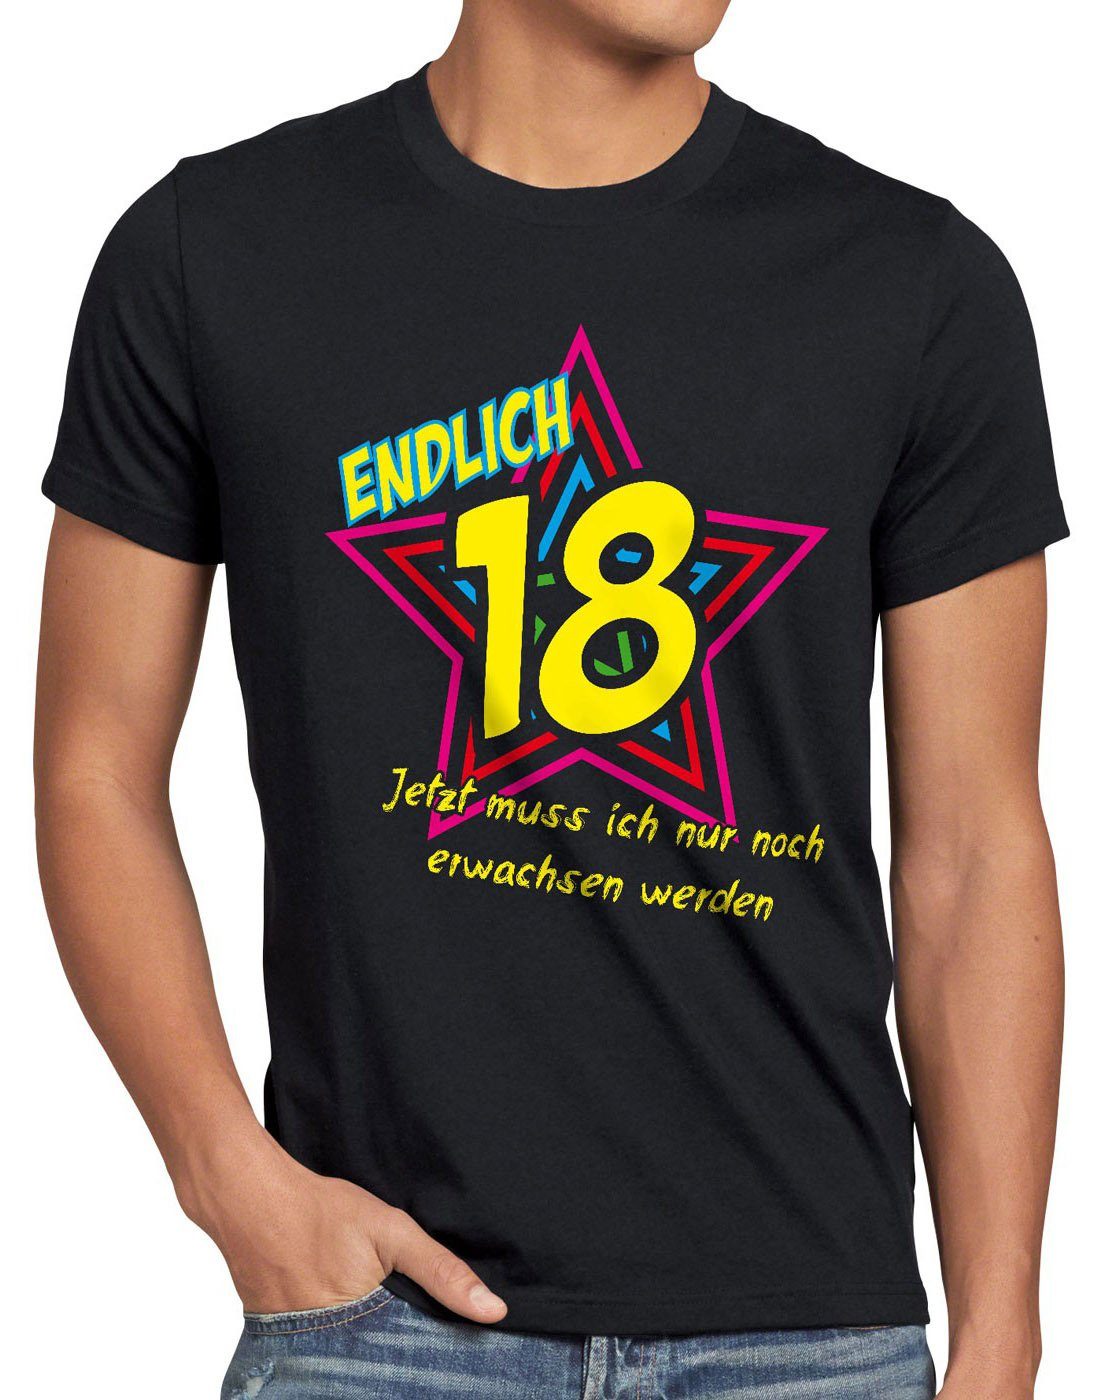 style3 Print-Shirt Herren Geburtstag noch Jetzt Fun werden! Funshirt erwachsen schwarz T-Shirt 18 Endlich